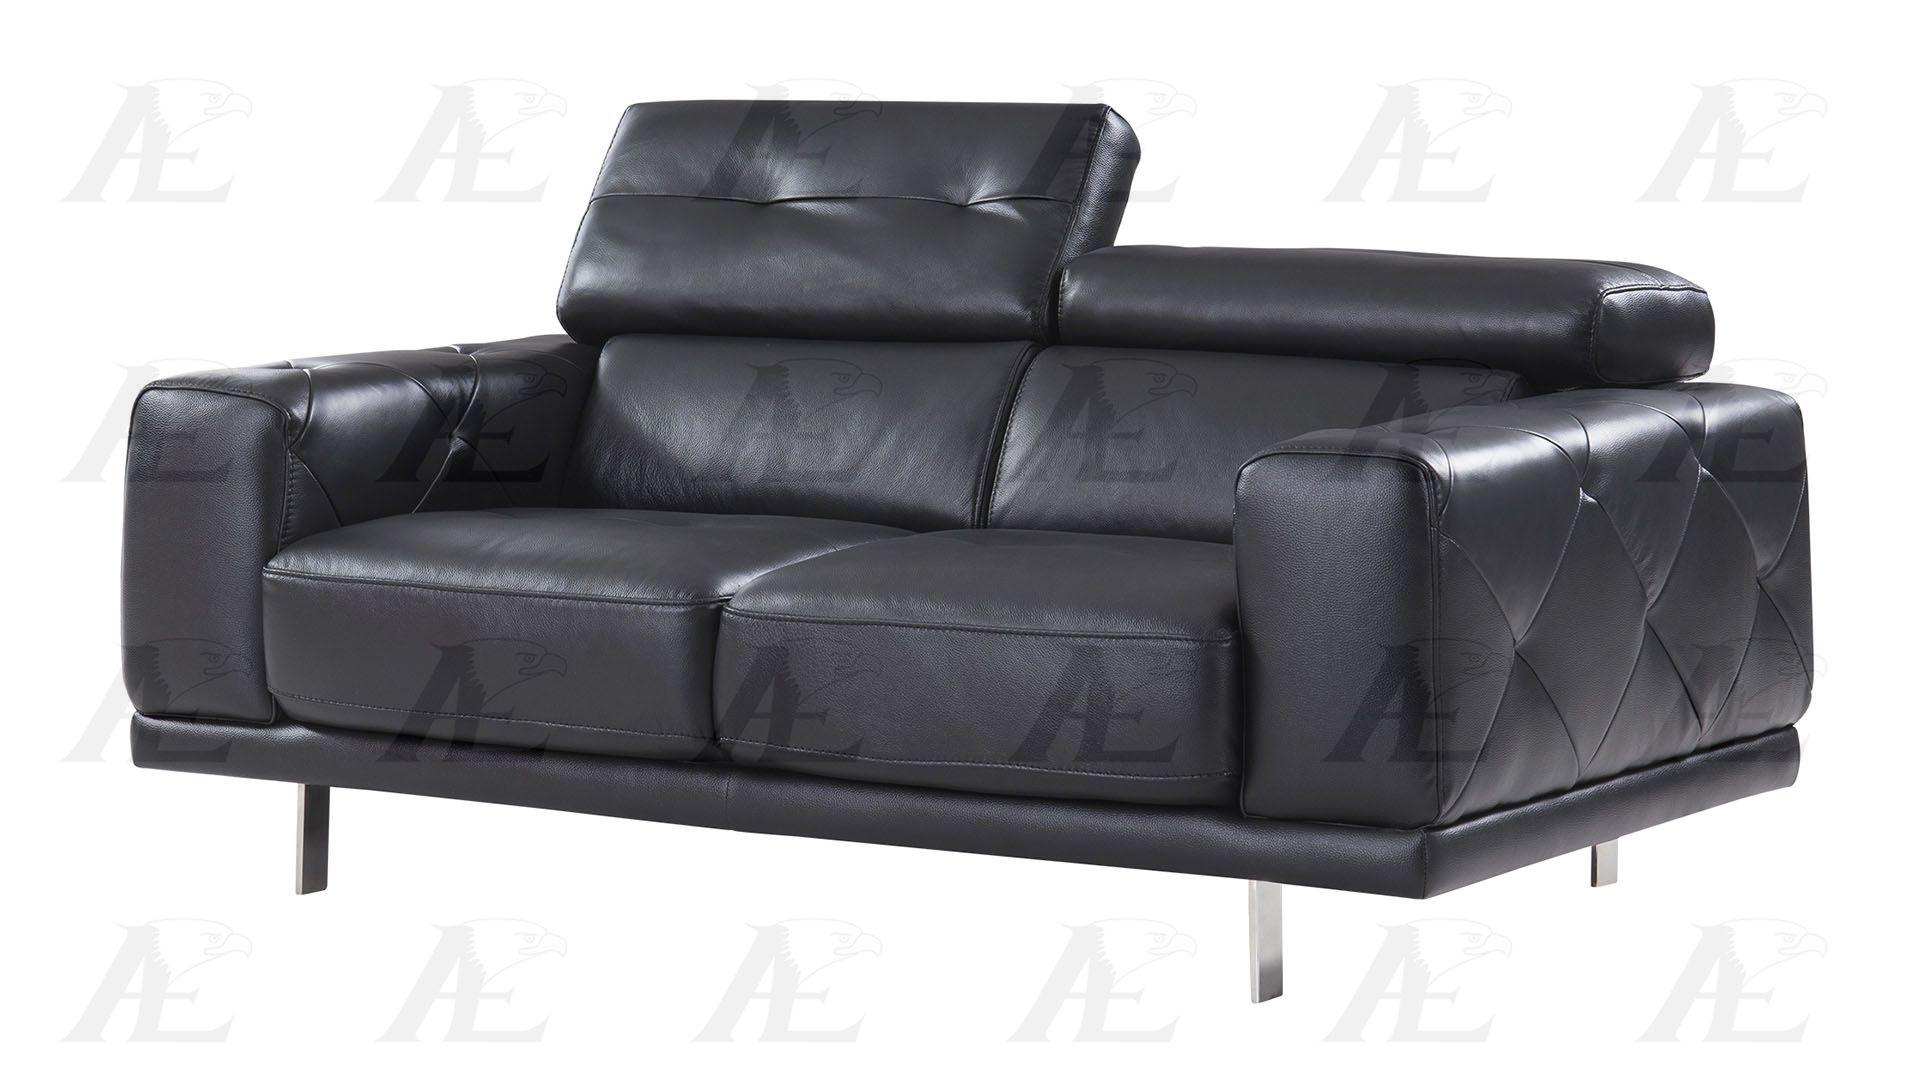 

    
EK039-BK American Eagle Furniture Sofa
